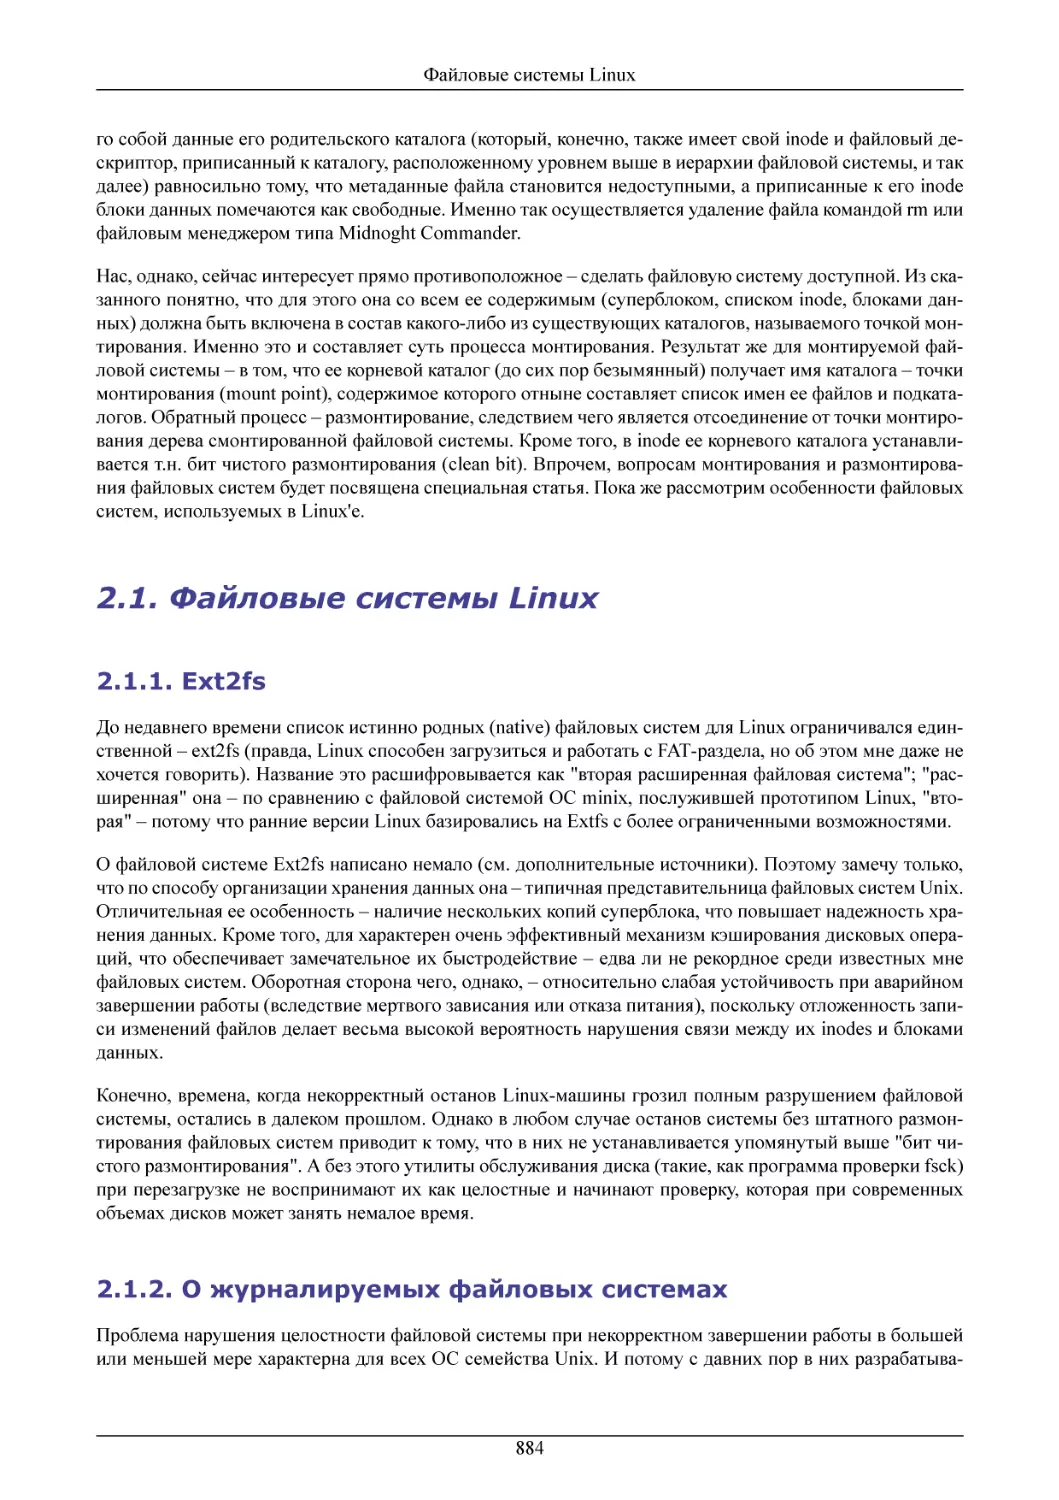 Файловые системы Linux
Ext2fs
О журналируемых файловых системах